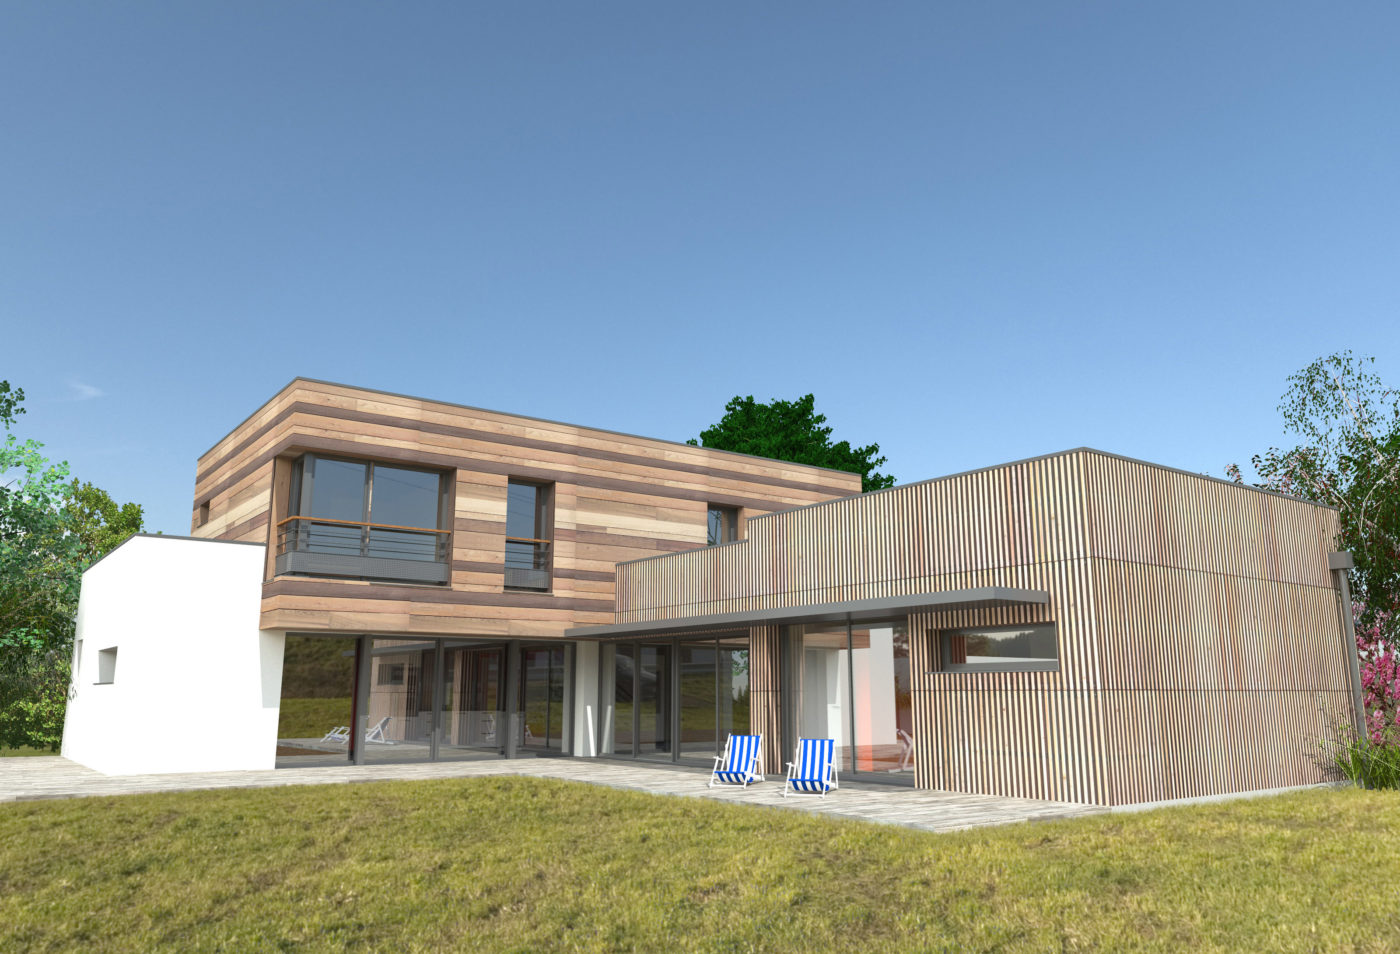 Philippe_Zerbib_Architecte_construction_maisons_ossature_bois_projet_maison_Duchet_View 10_3.